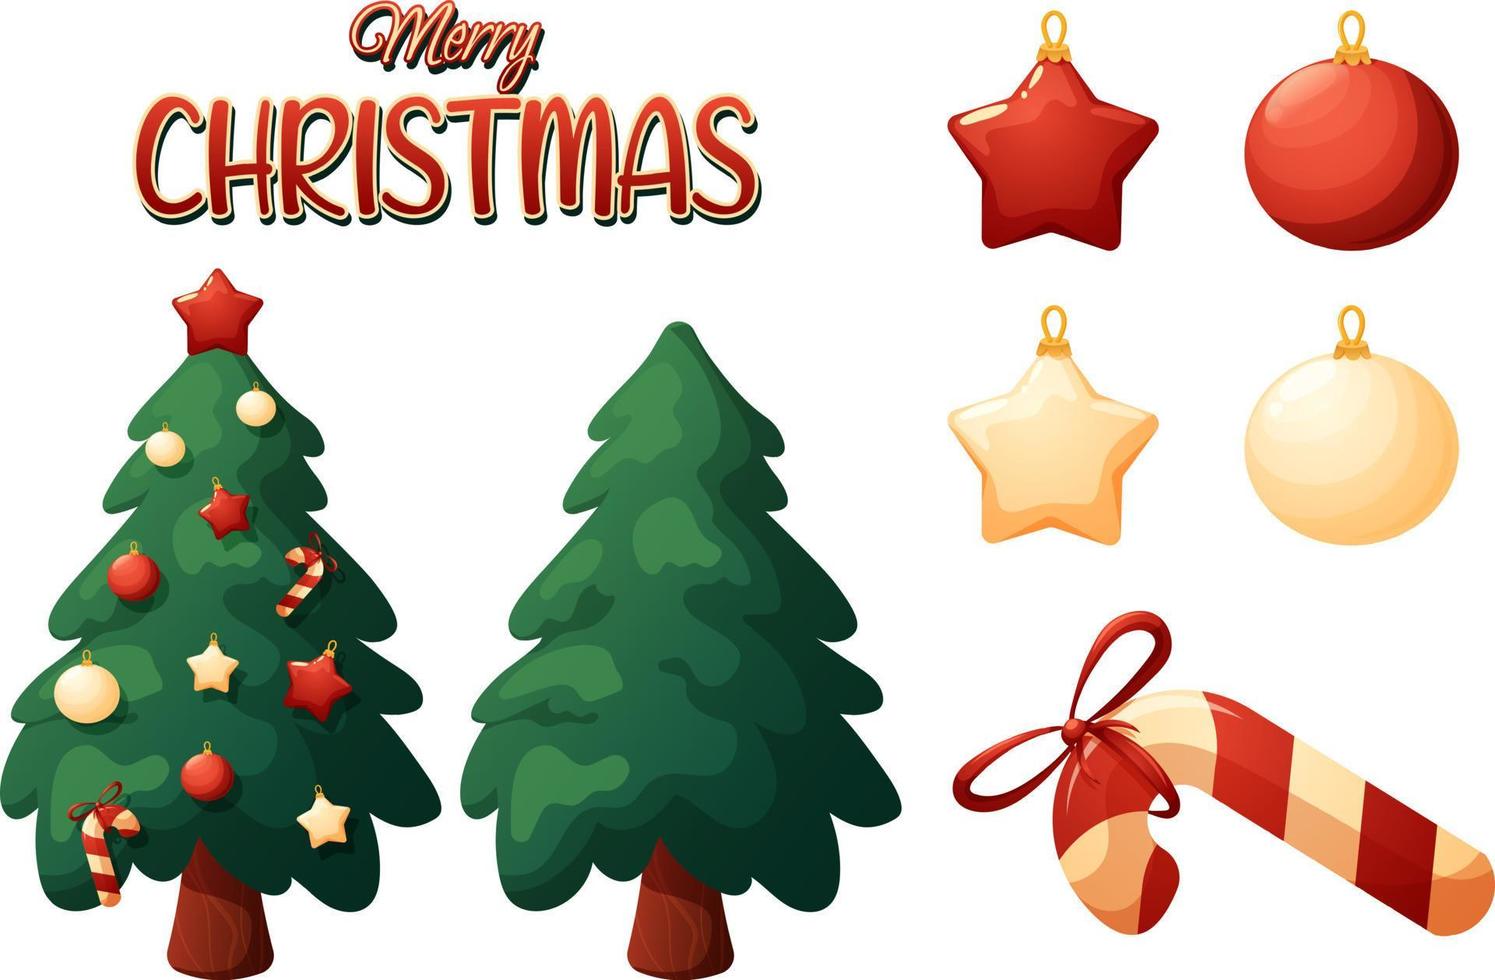 natal definido no estilo cartoon de árvores de natal, letras feliz natal e brinquedos vetor